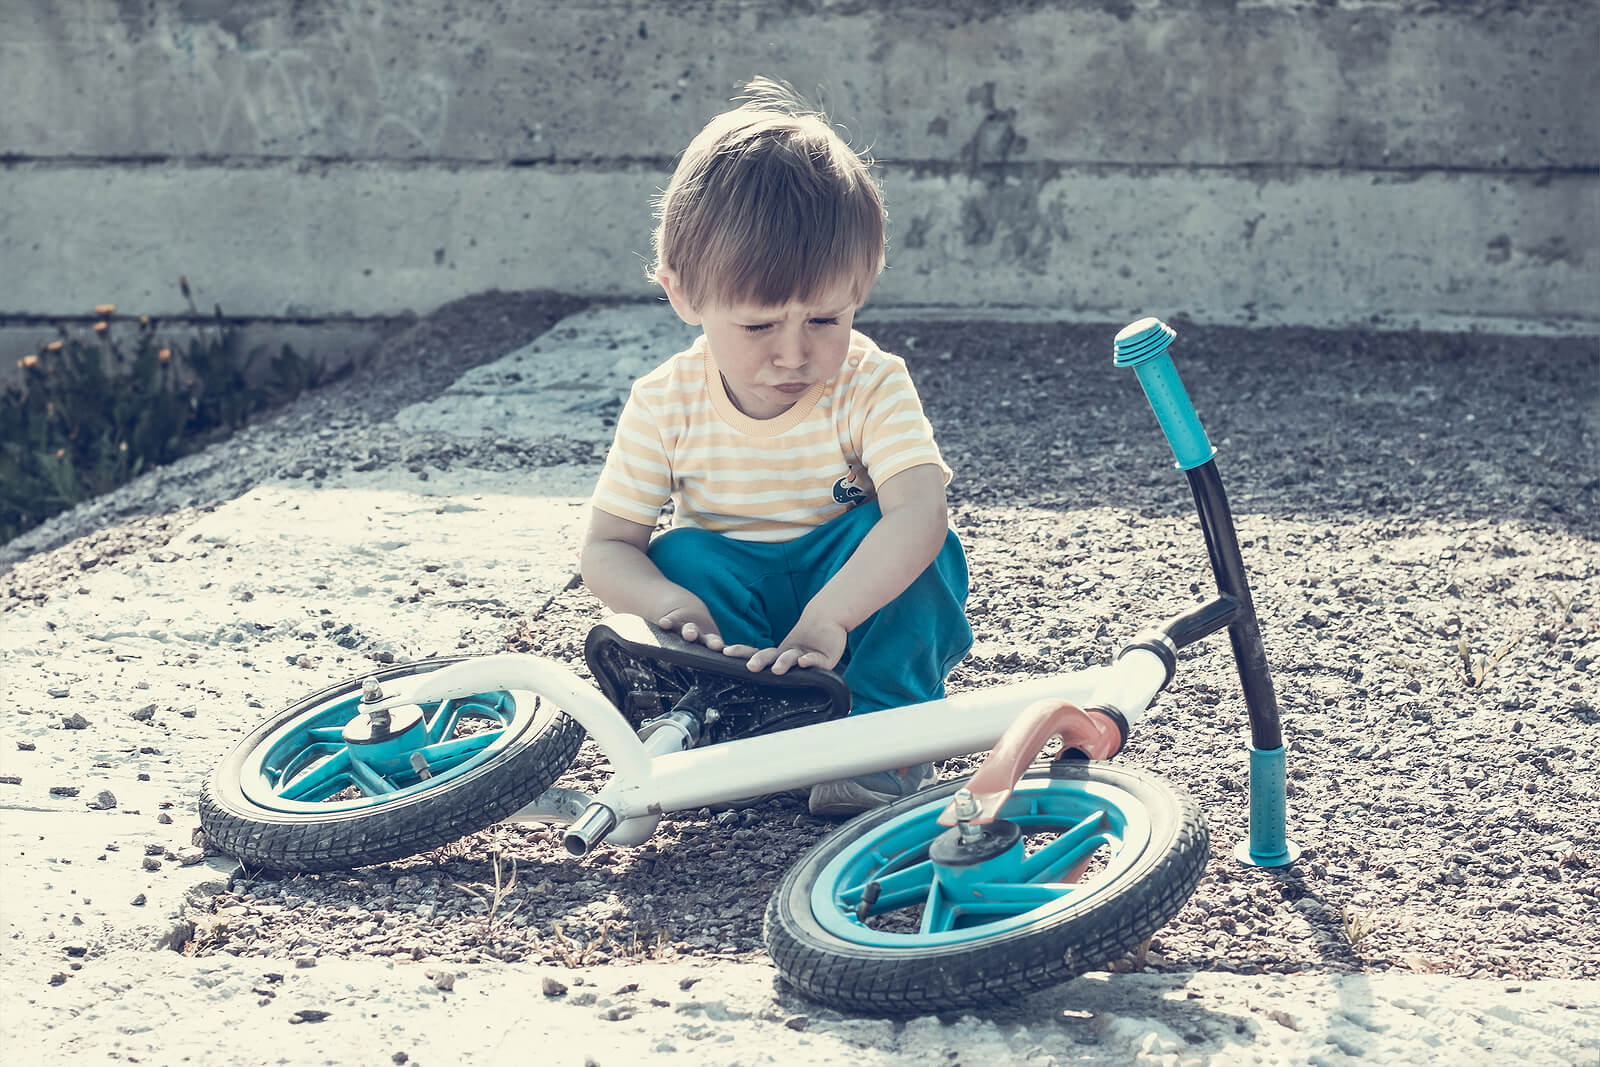 Garçon de 2 ans avec le vélo allongé sur le sol.